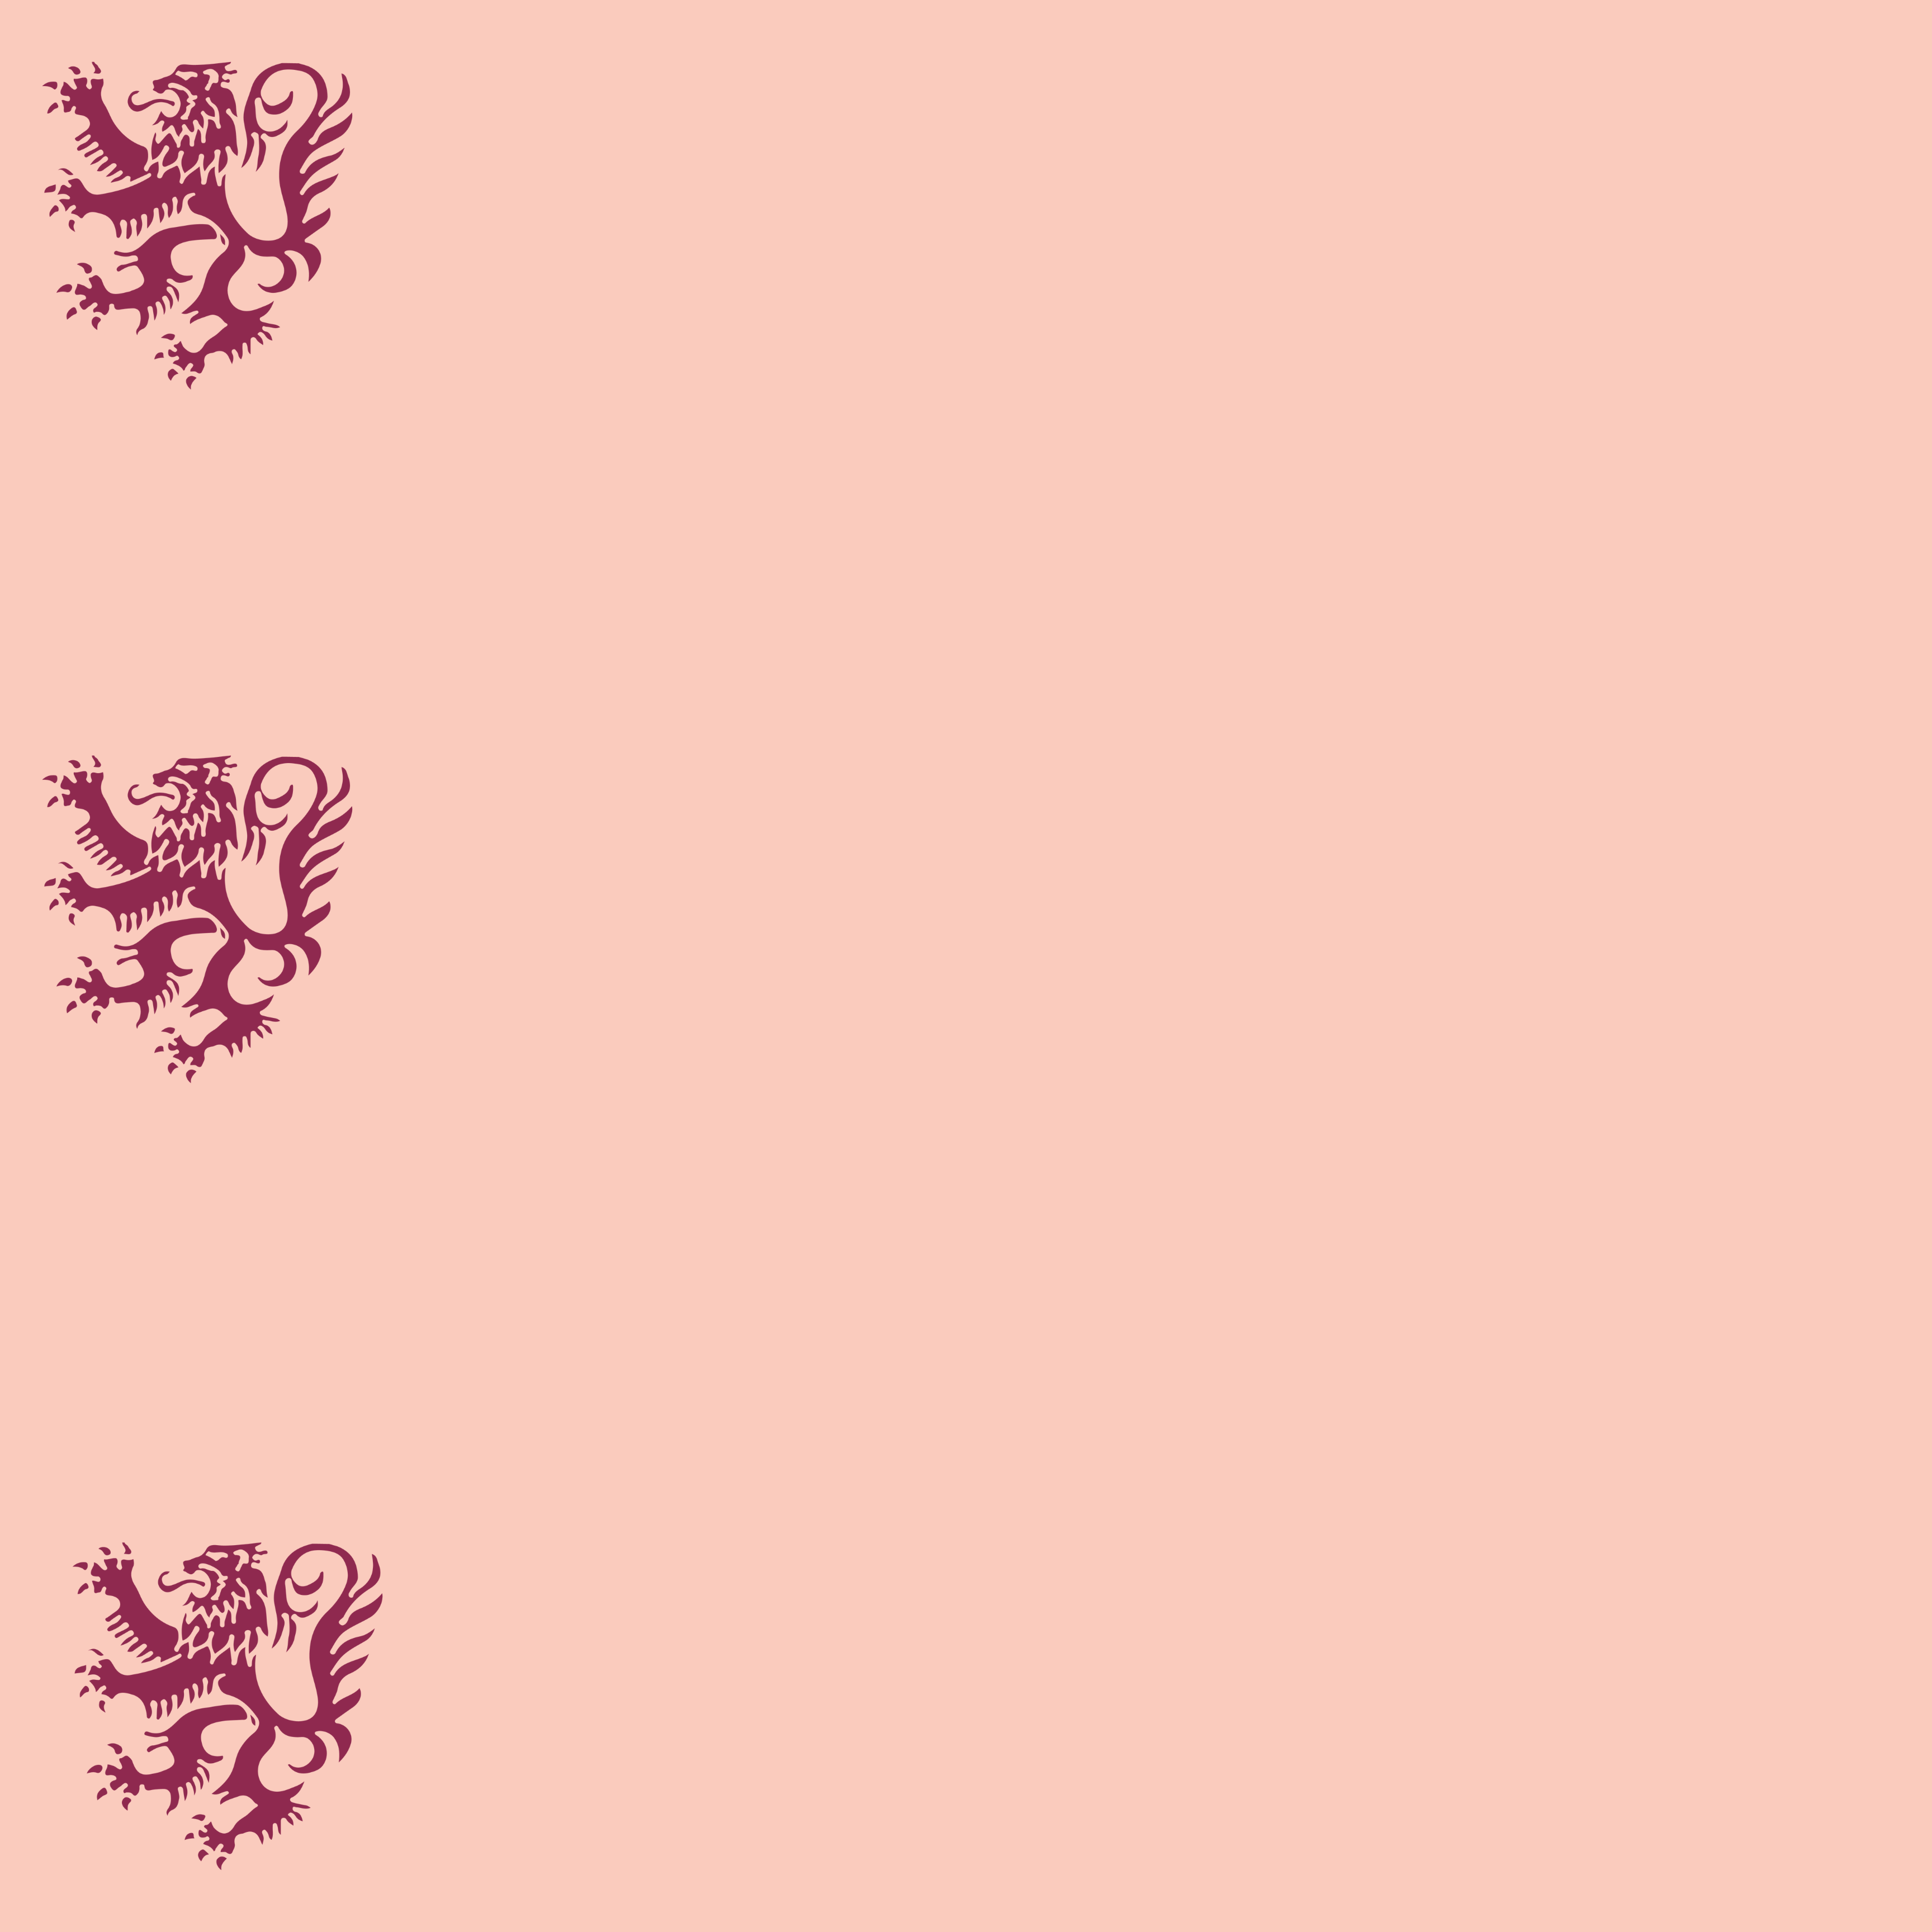 Cheney lion pink banner